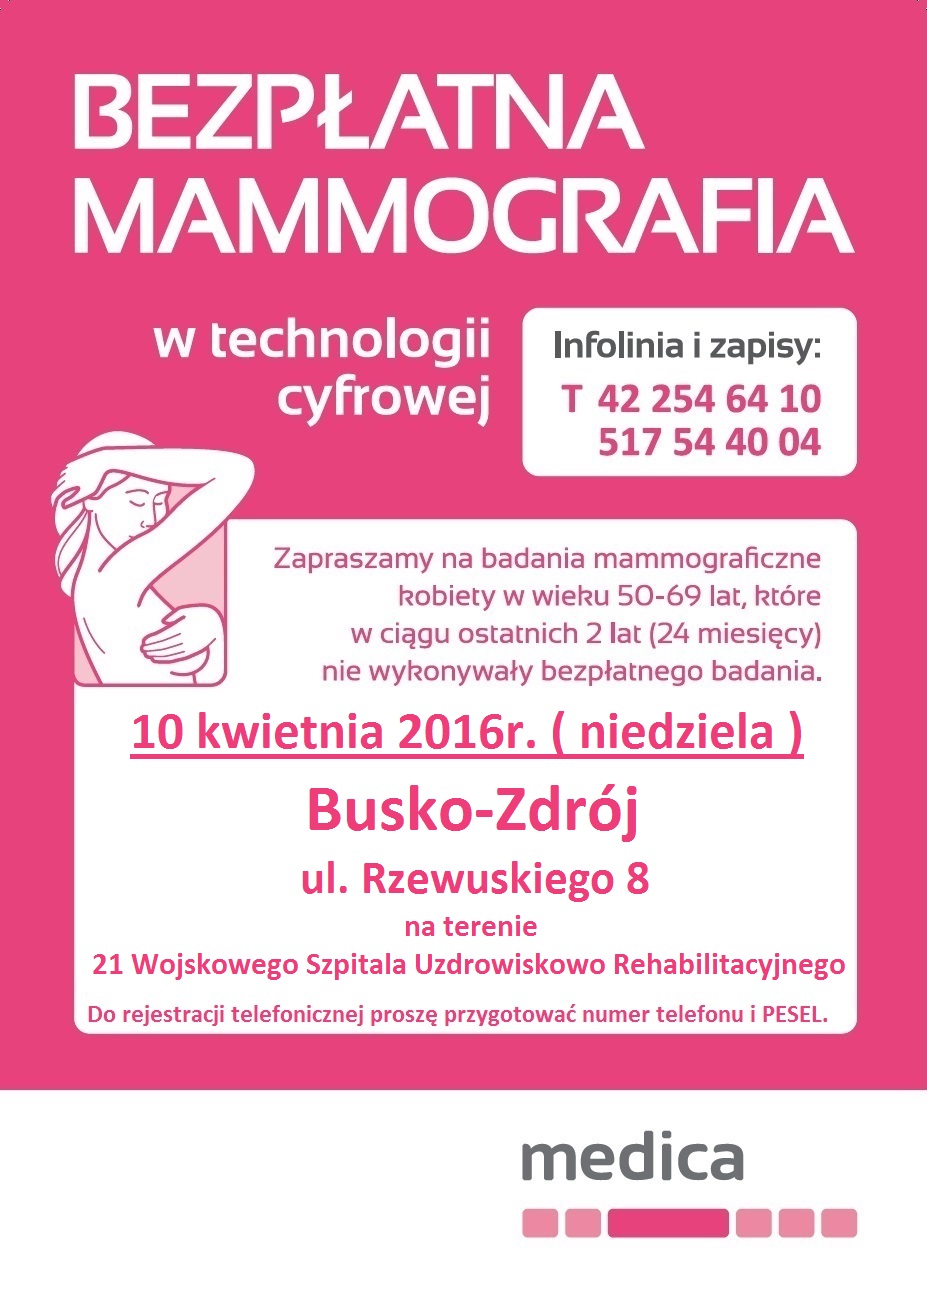 Zapraszamy na bezpłatne badania mammograficzne. 